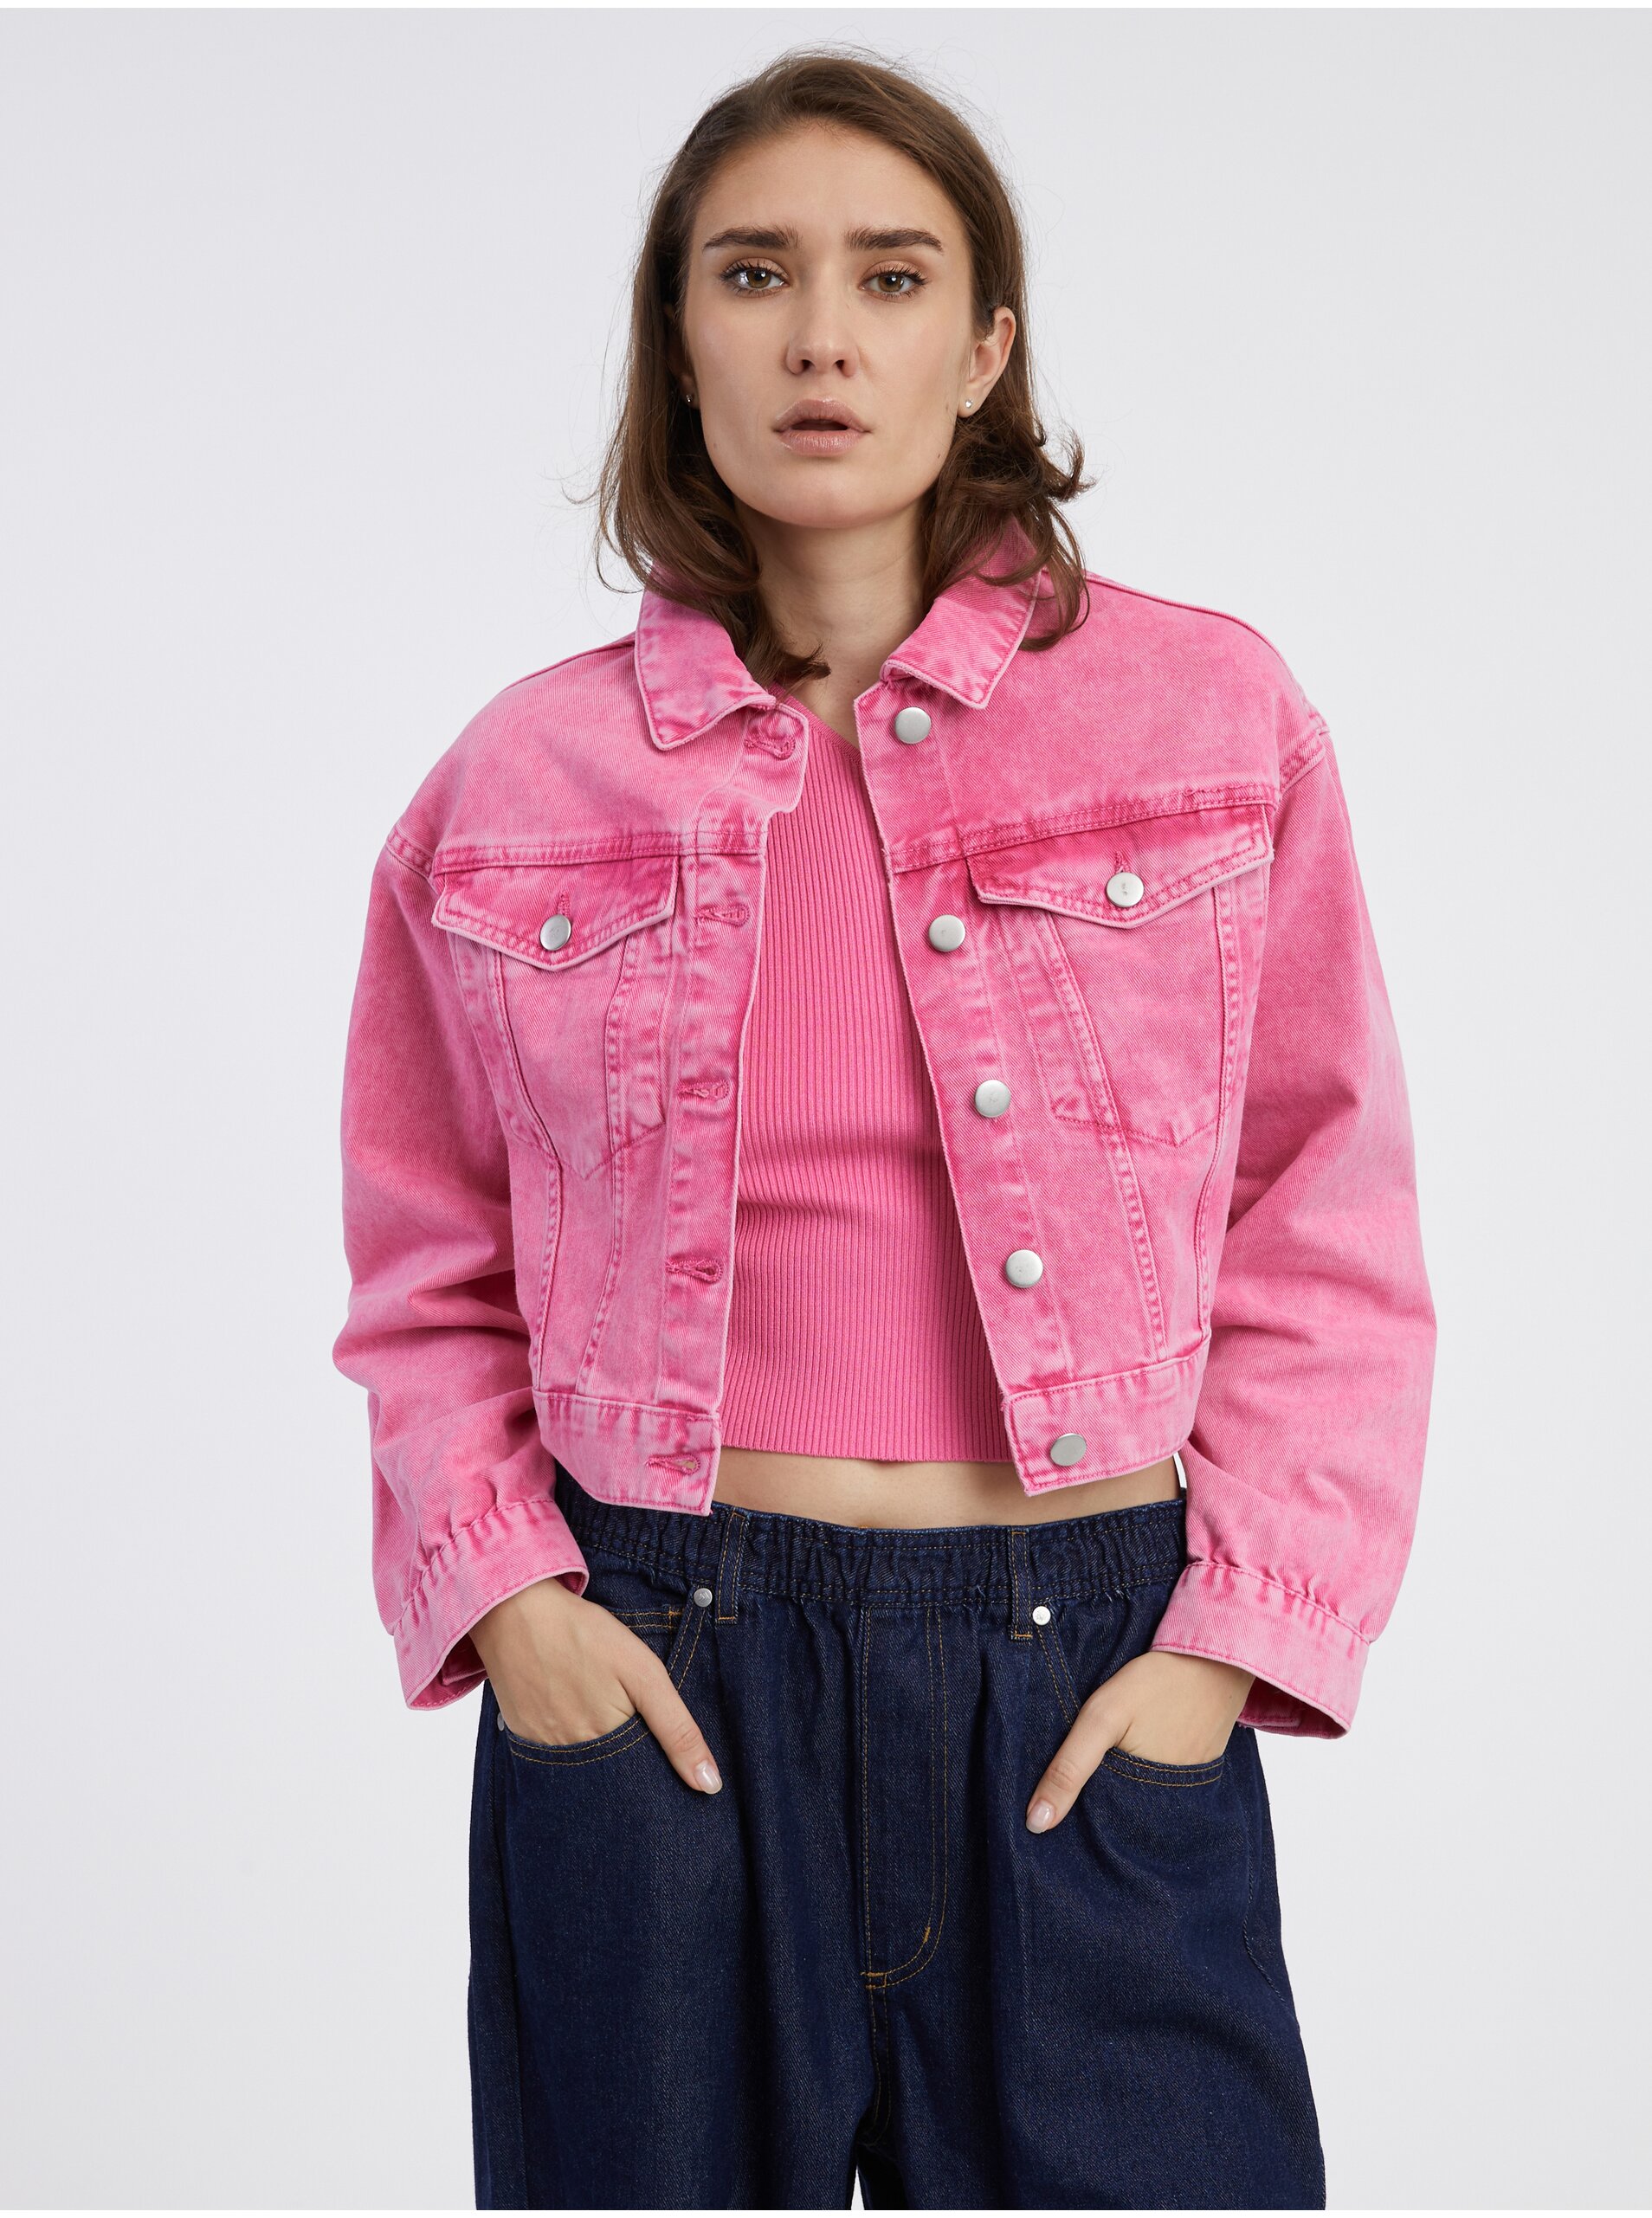 E-shop Tmavě růžová dámská crop top džínová bunda Pieces Liv